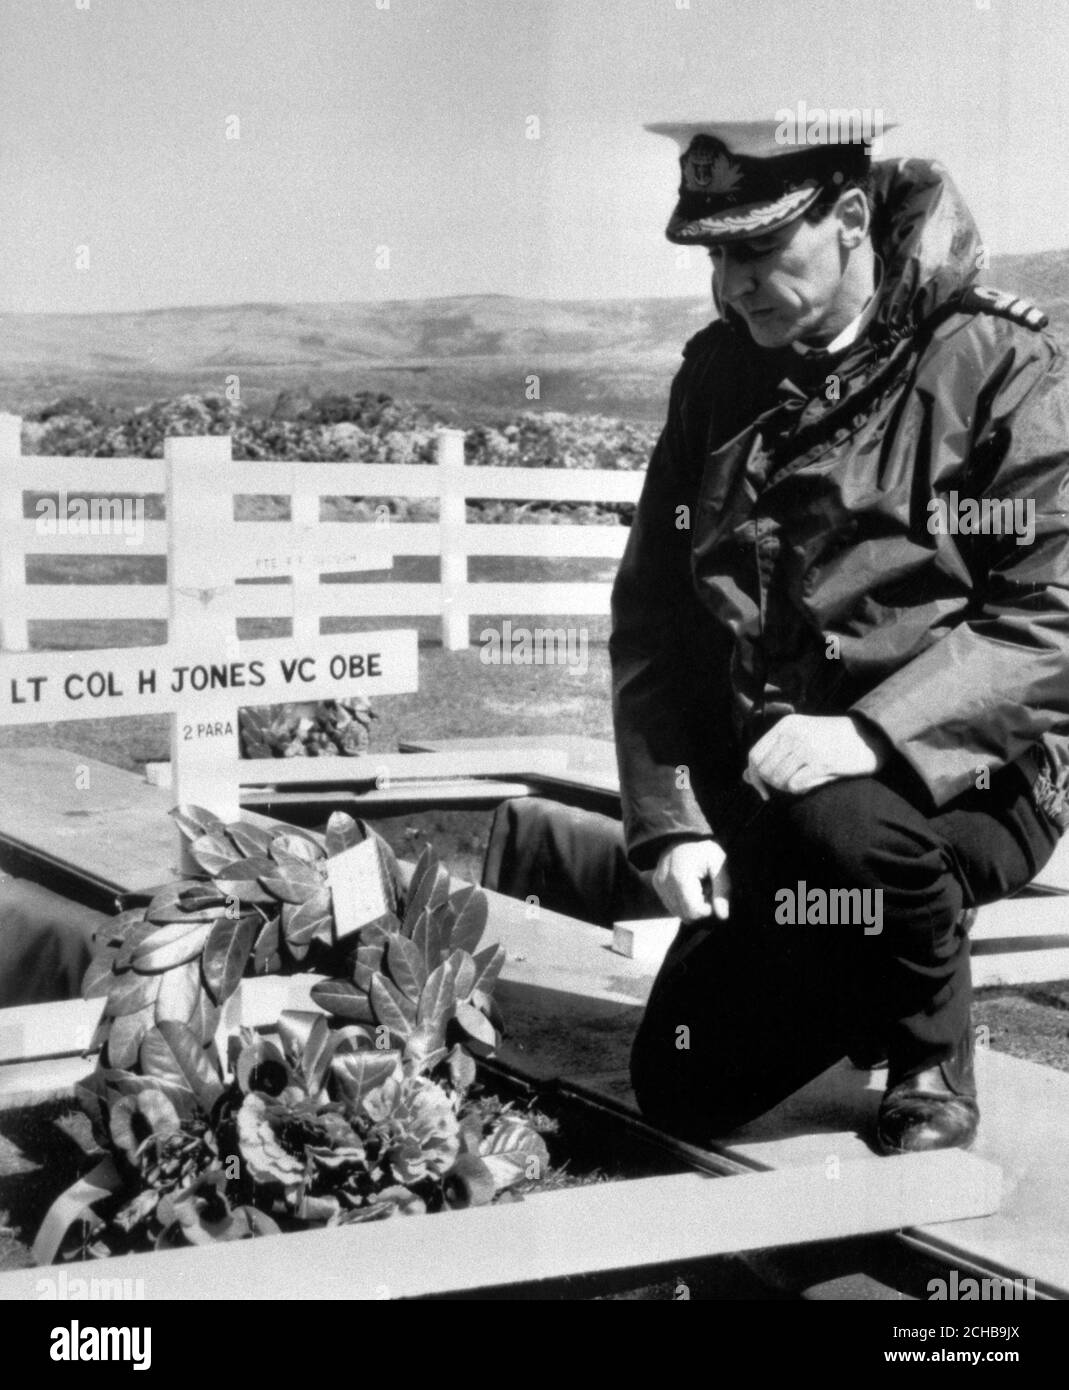 Un cuadro del Ministerio de Defensa publicado en Londres, que muestra el CDR Tim Jones, RN, arrodillándose en la ladera de su hermano Lt Col 'H' Jones VC, que estaba entre los 14 hombres muertos en la lucha de las Malvinas. Será enterrado de nuevo en el Cementerio Militar de Blue Beach en Puerto San Carlos. Foto de stock